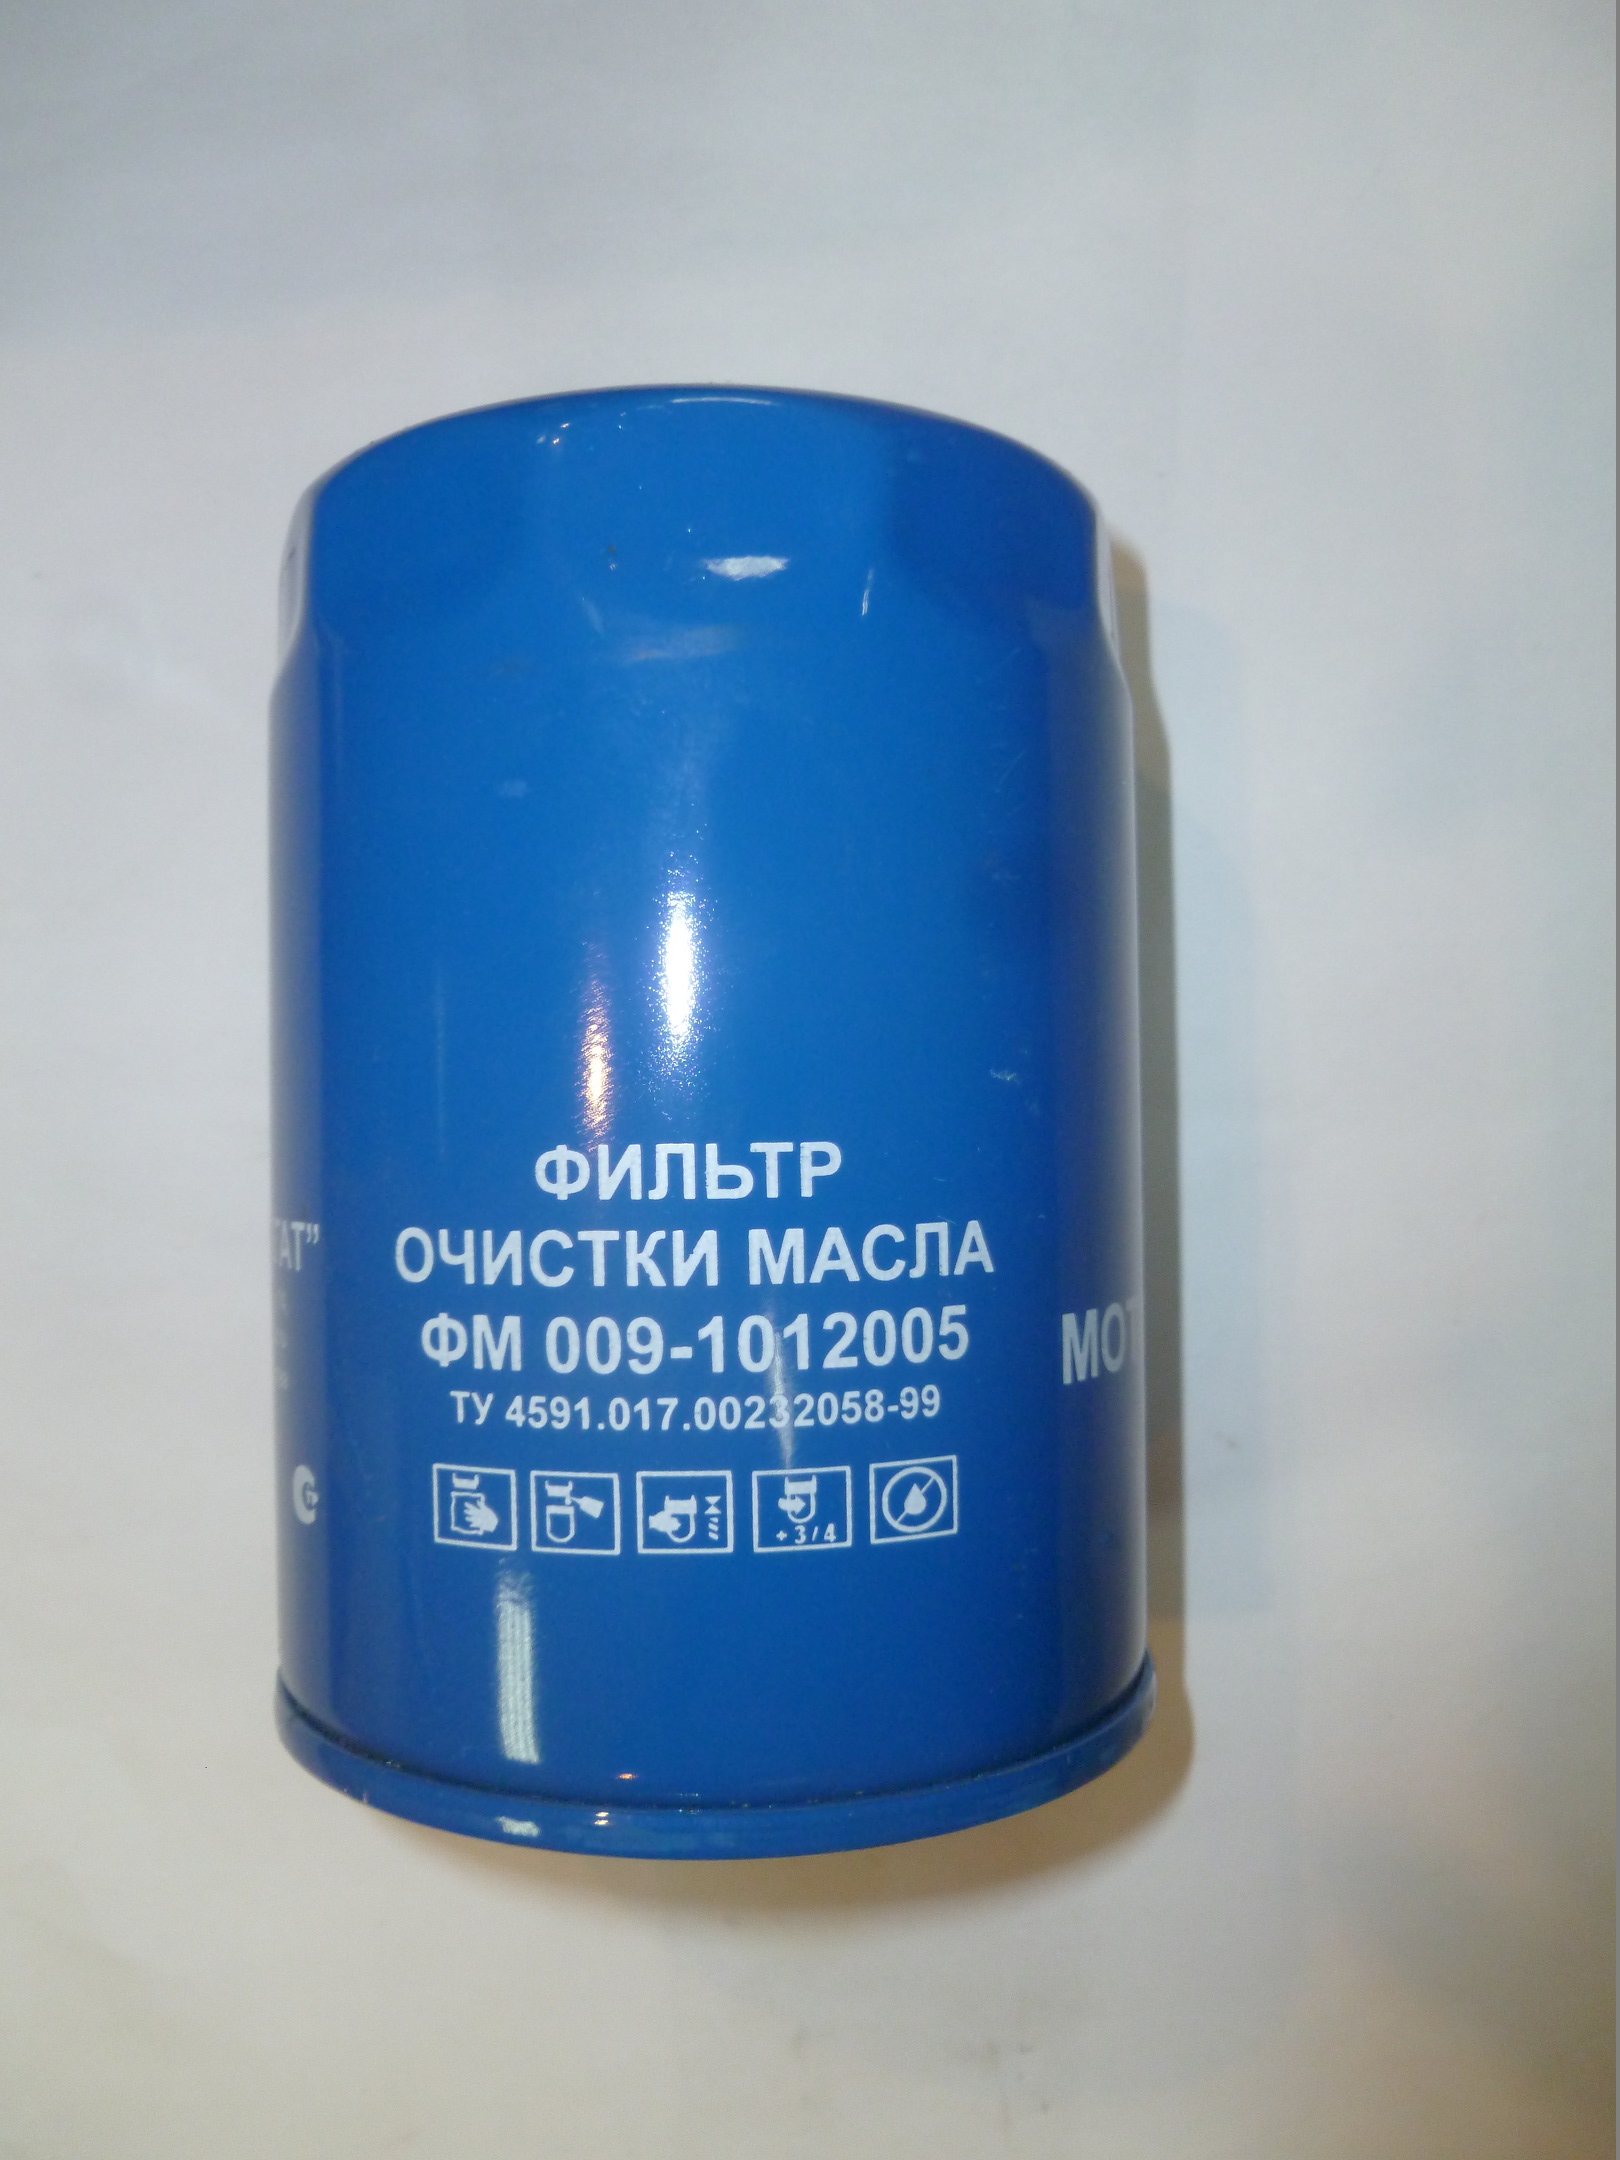 Фильтр тонкой очистки масла для ММЗ Д243,245,246.1/М5101/ФМ 009-1012005/ NF-1501-02